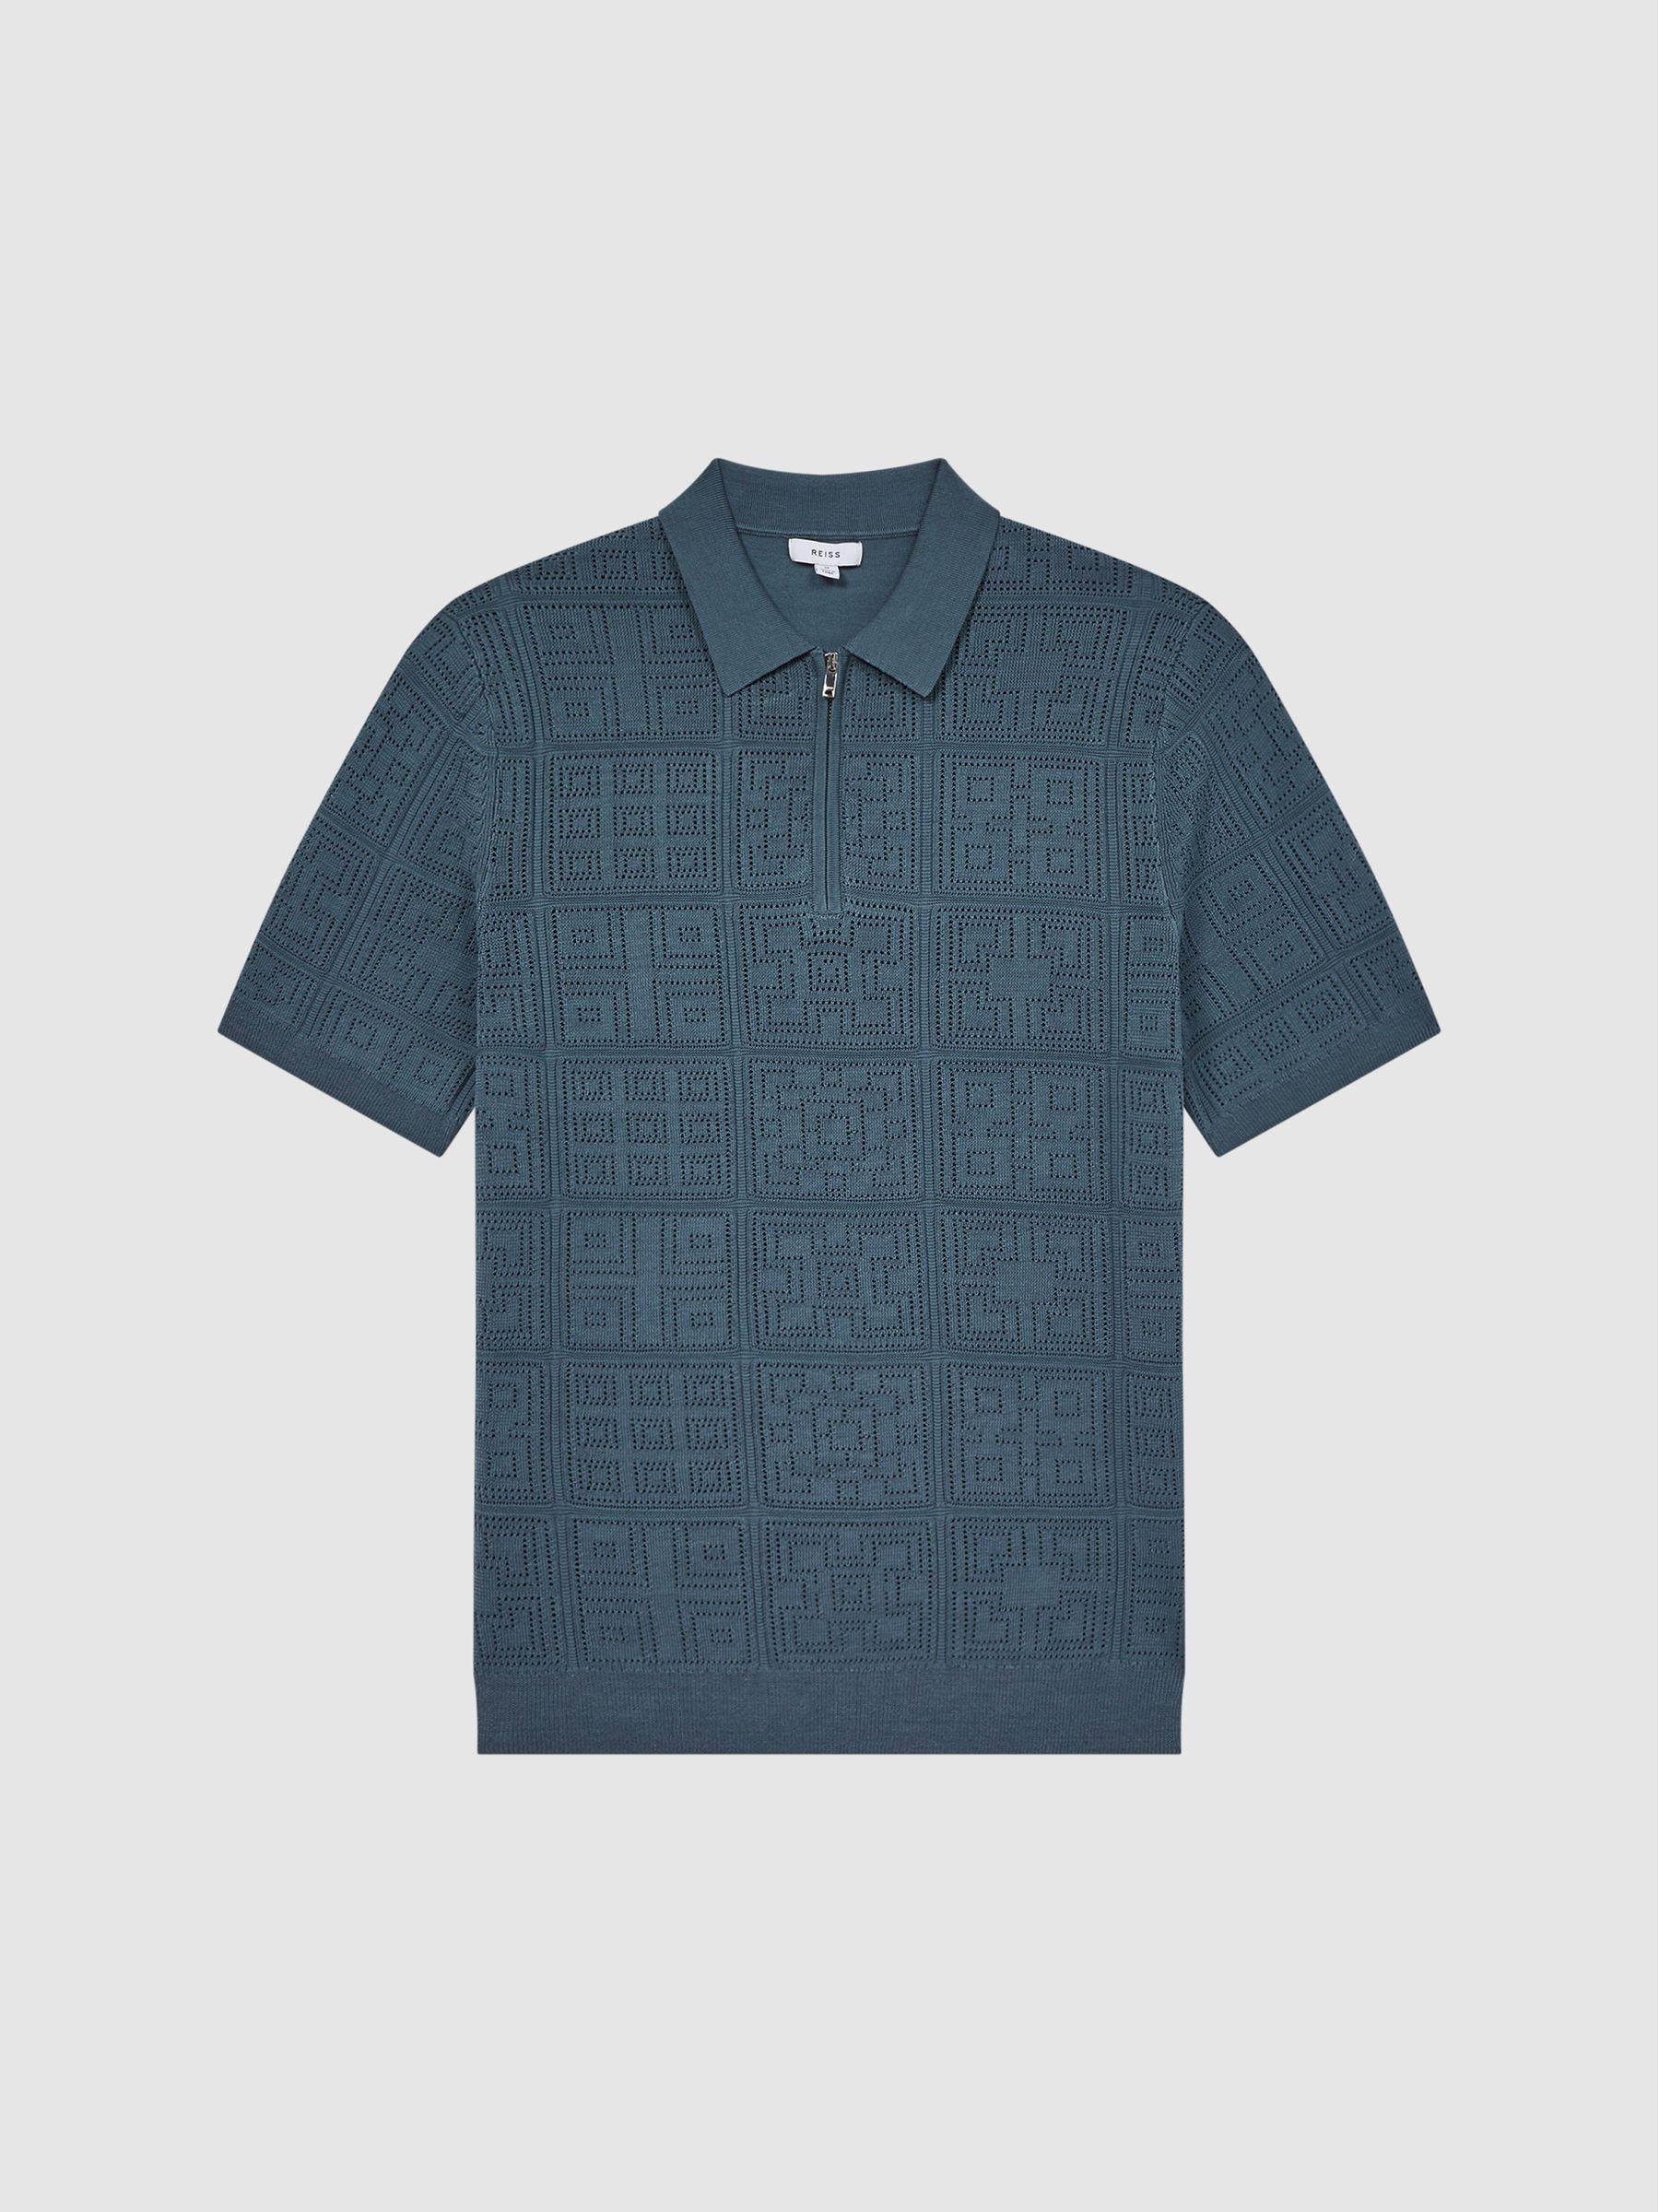 Reiss Mosaic Half Zip Textured Polo Shirt - REISS